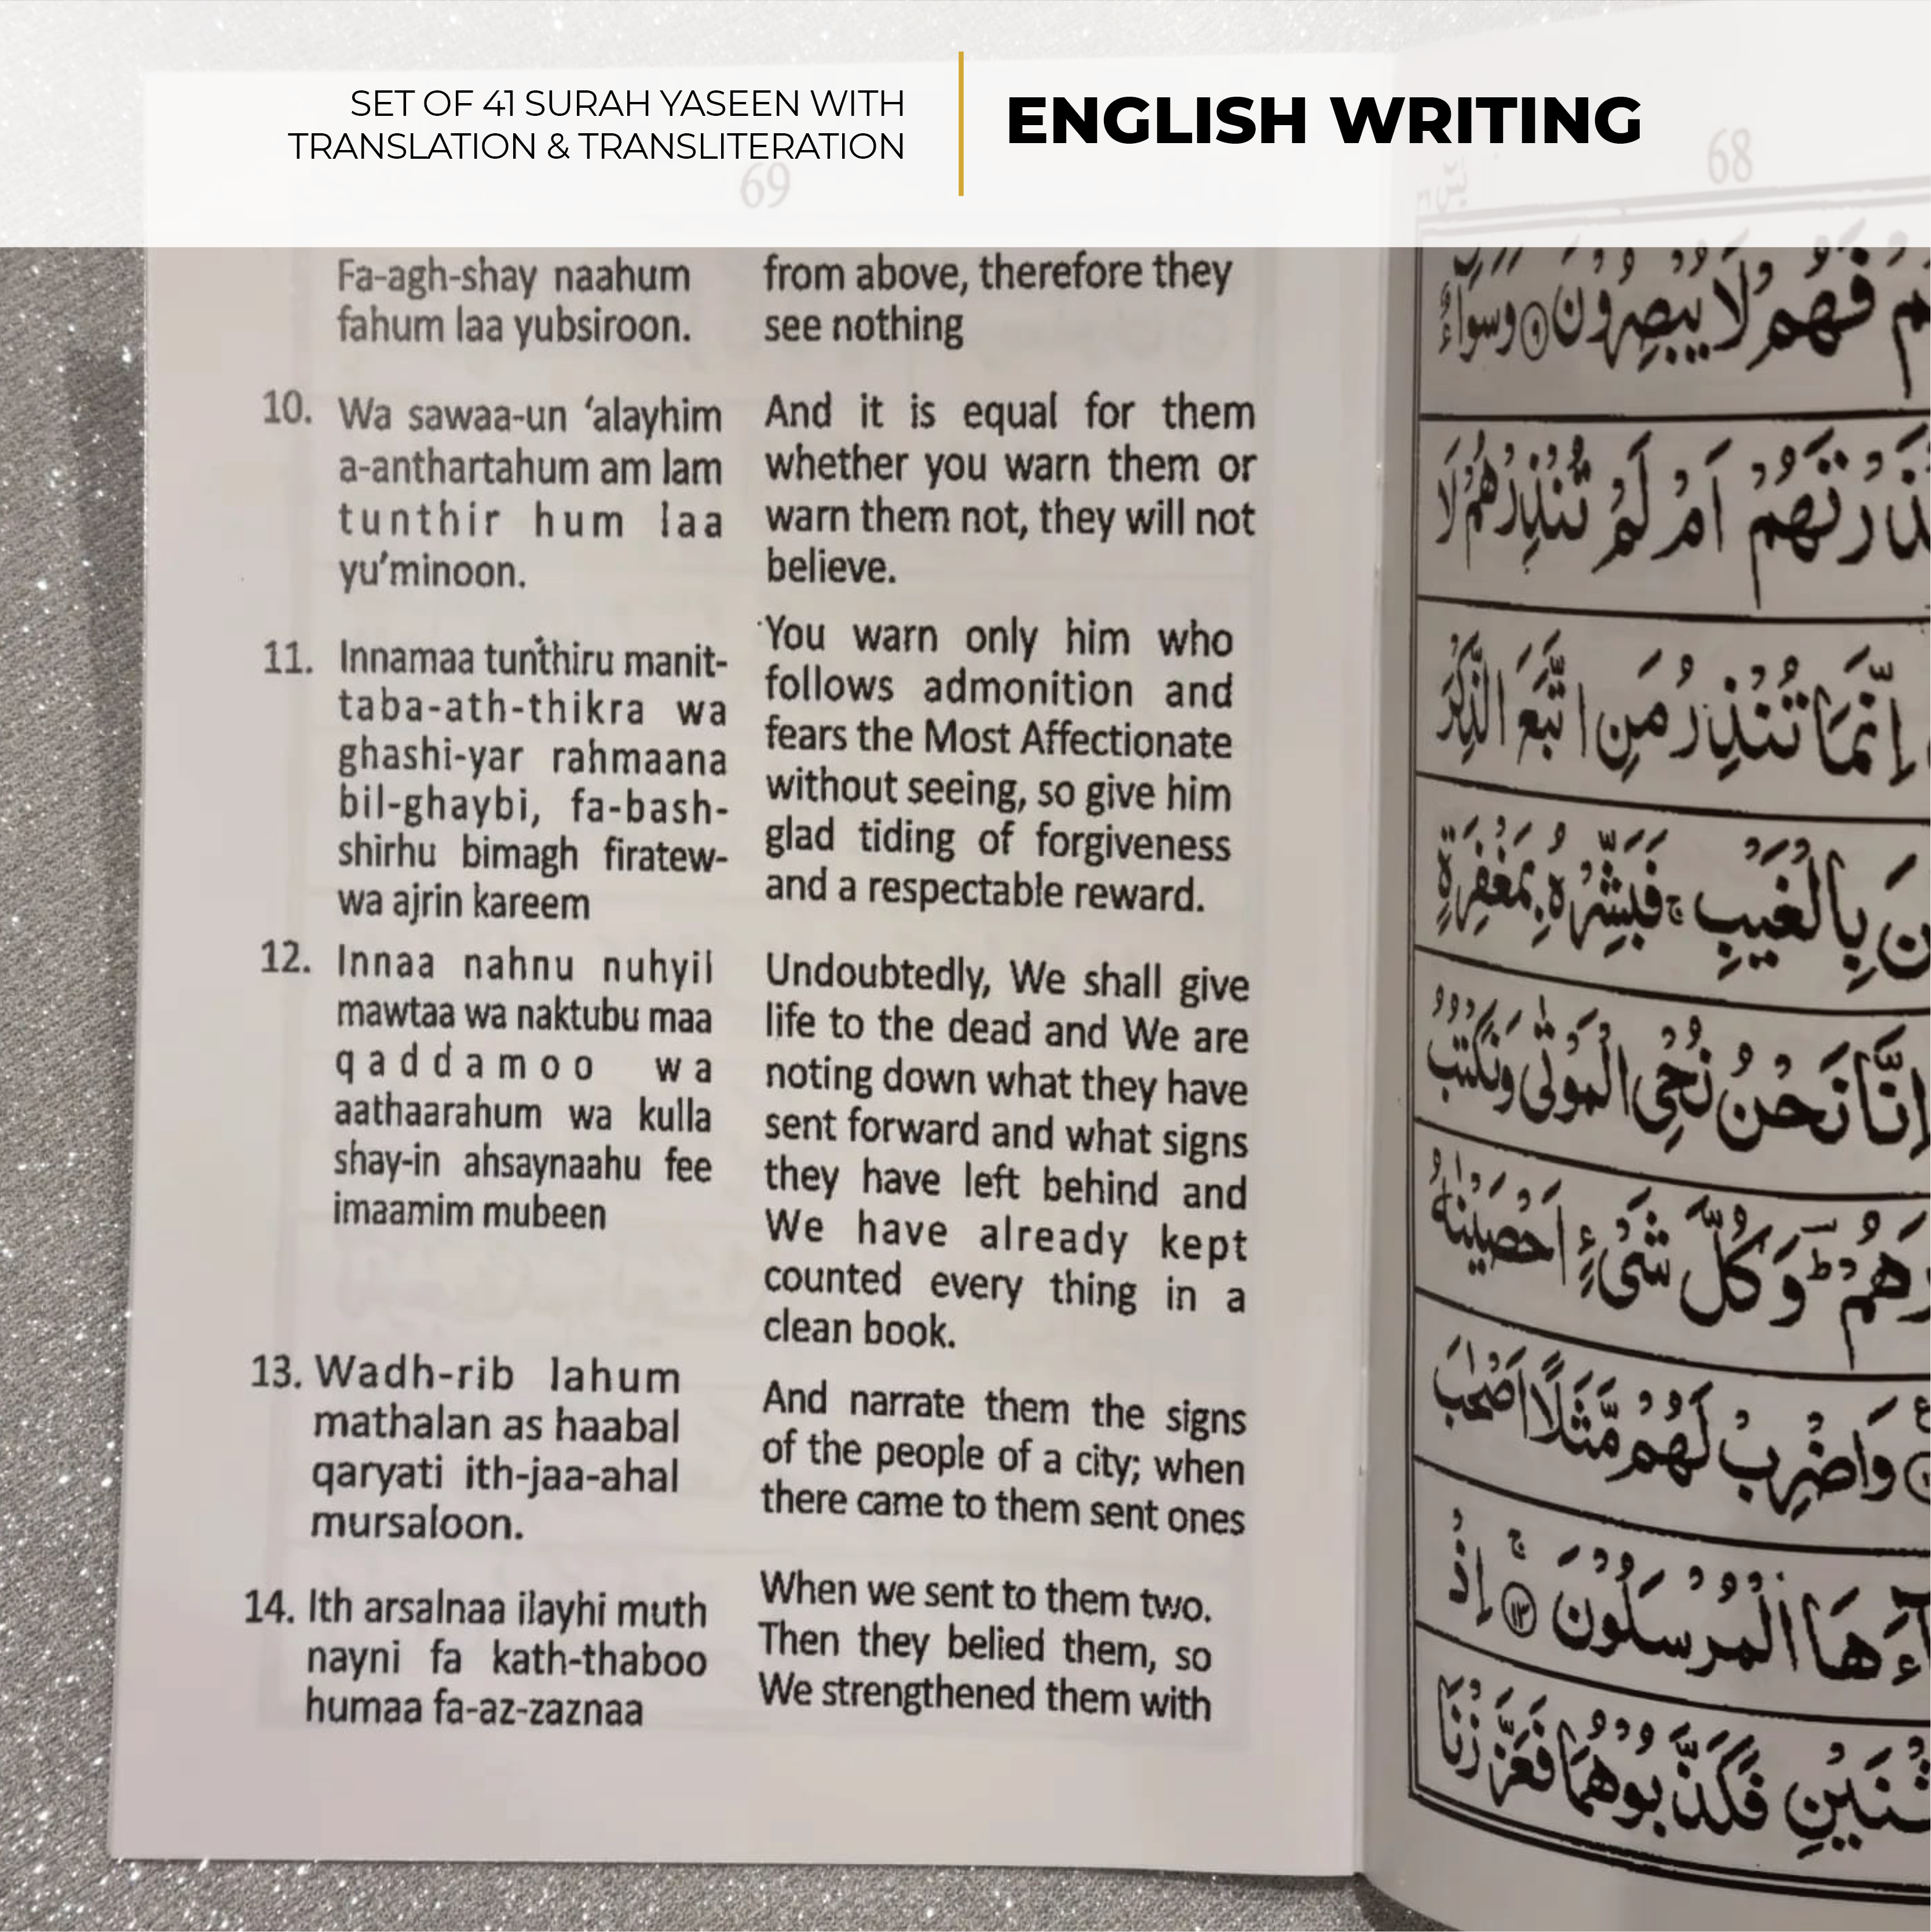 I-Surah Yaseen ene-English Translation &amp; Transliteration Isethi ye-41 A5 (Imiklamo emi-5)